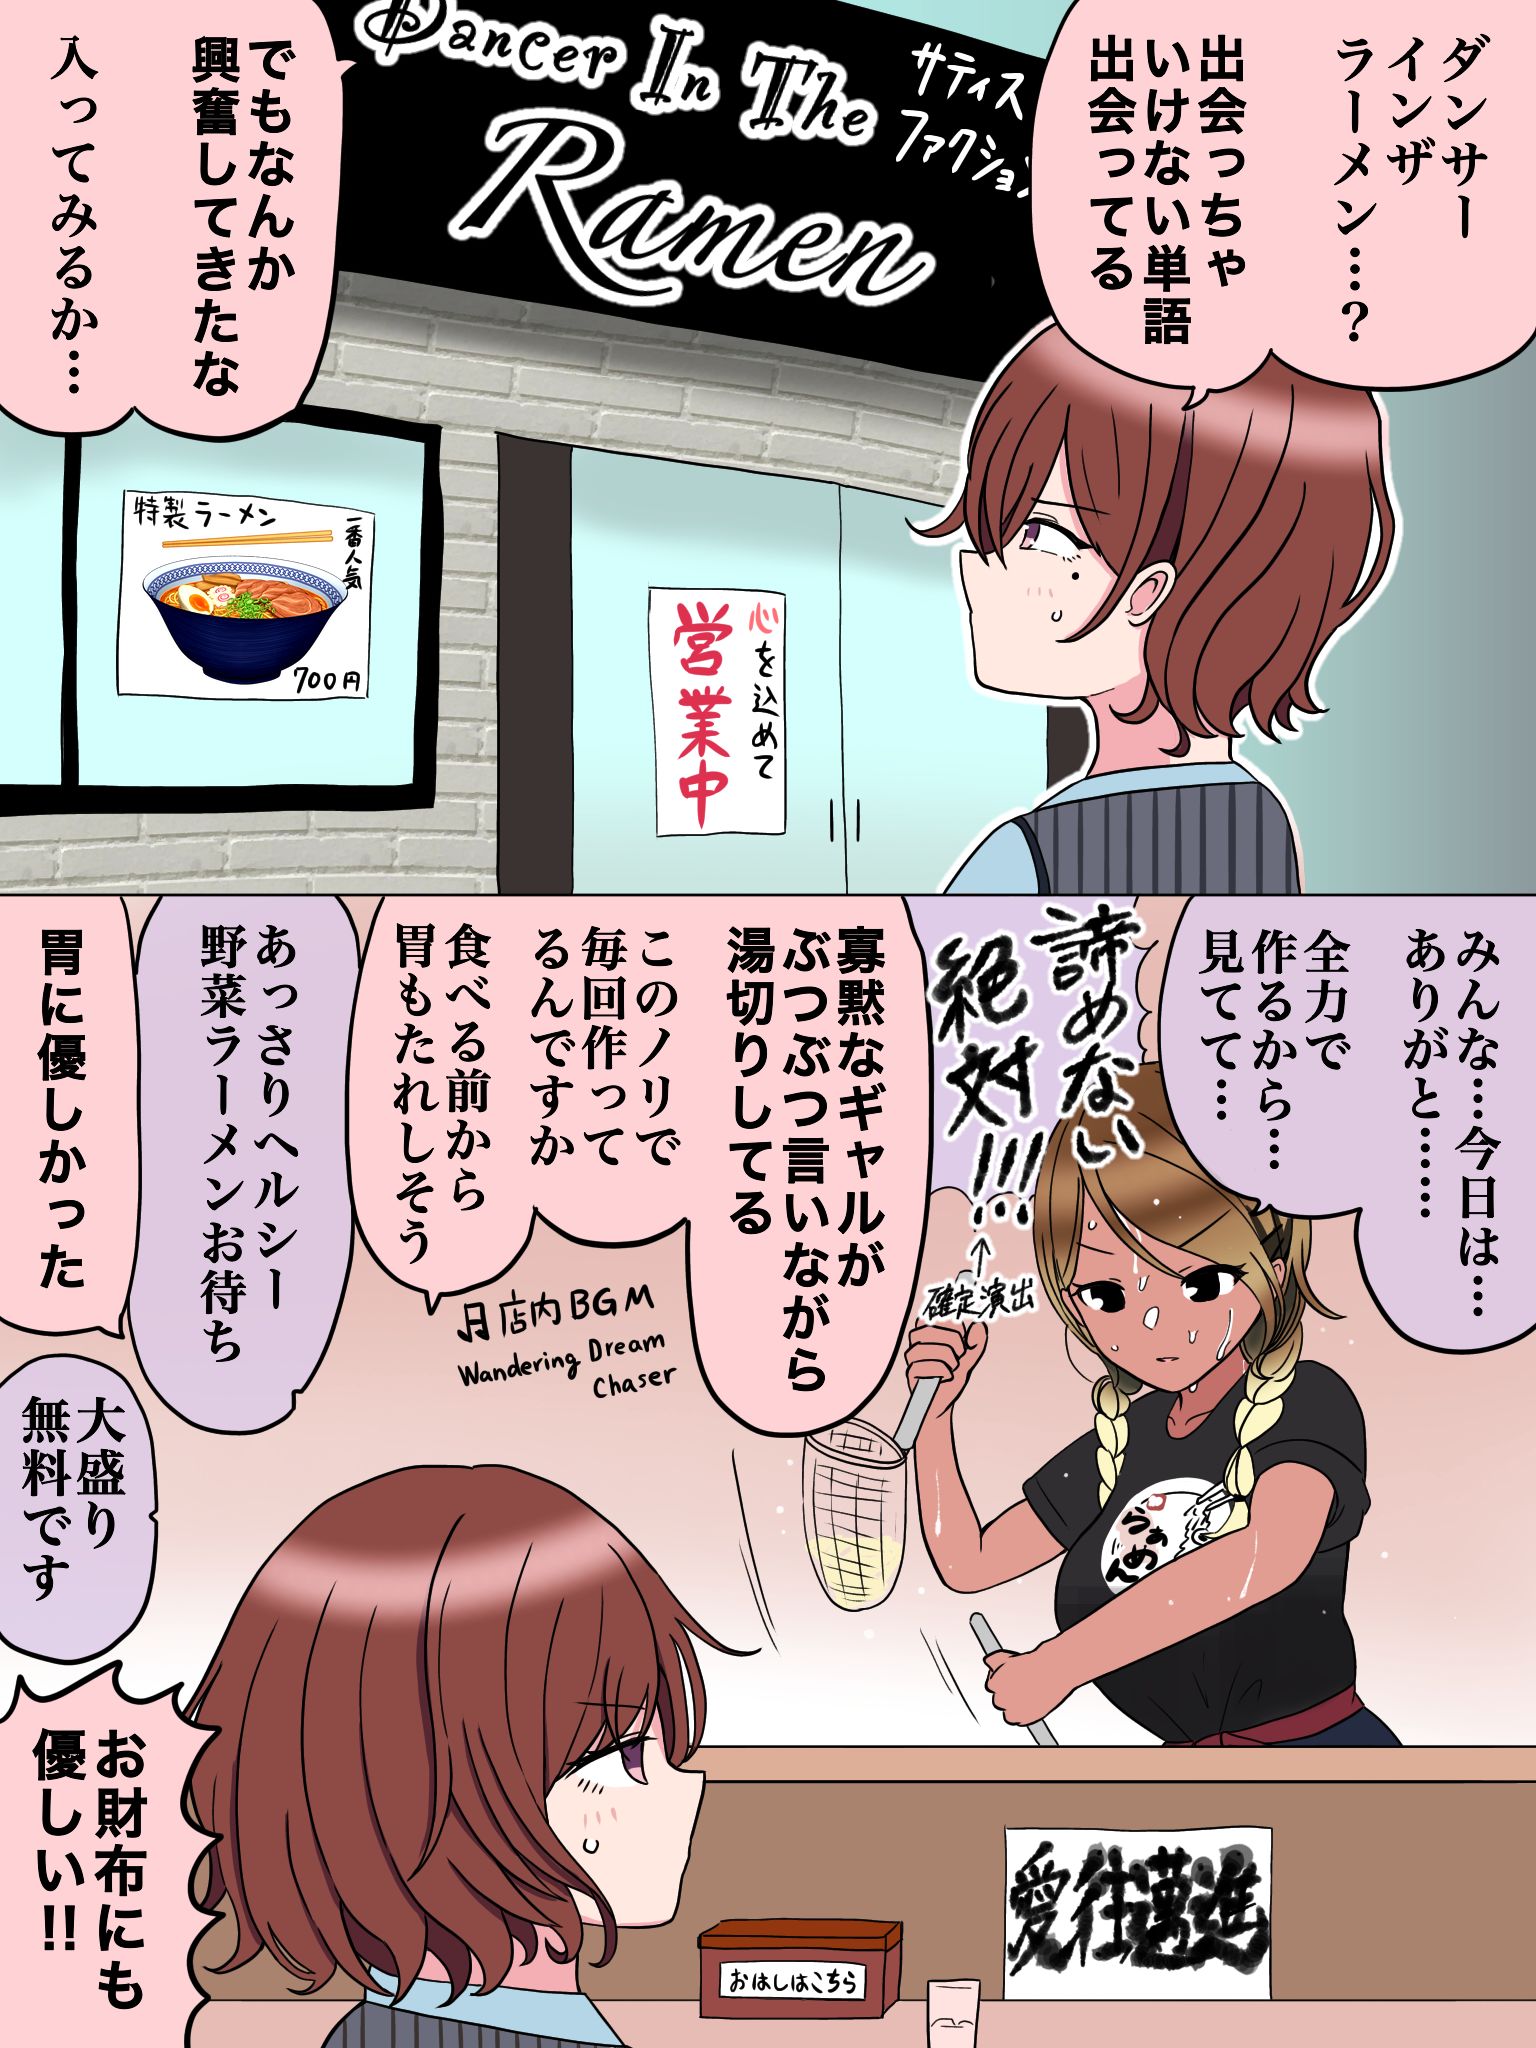 漫画152-偶像大师闪耀色彩樋口円香